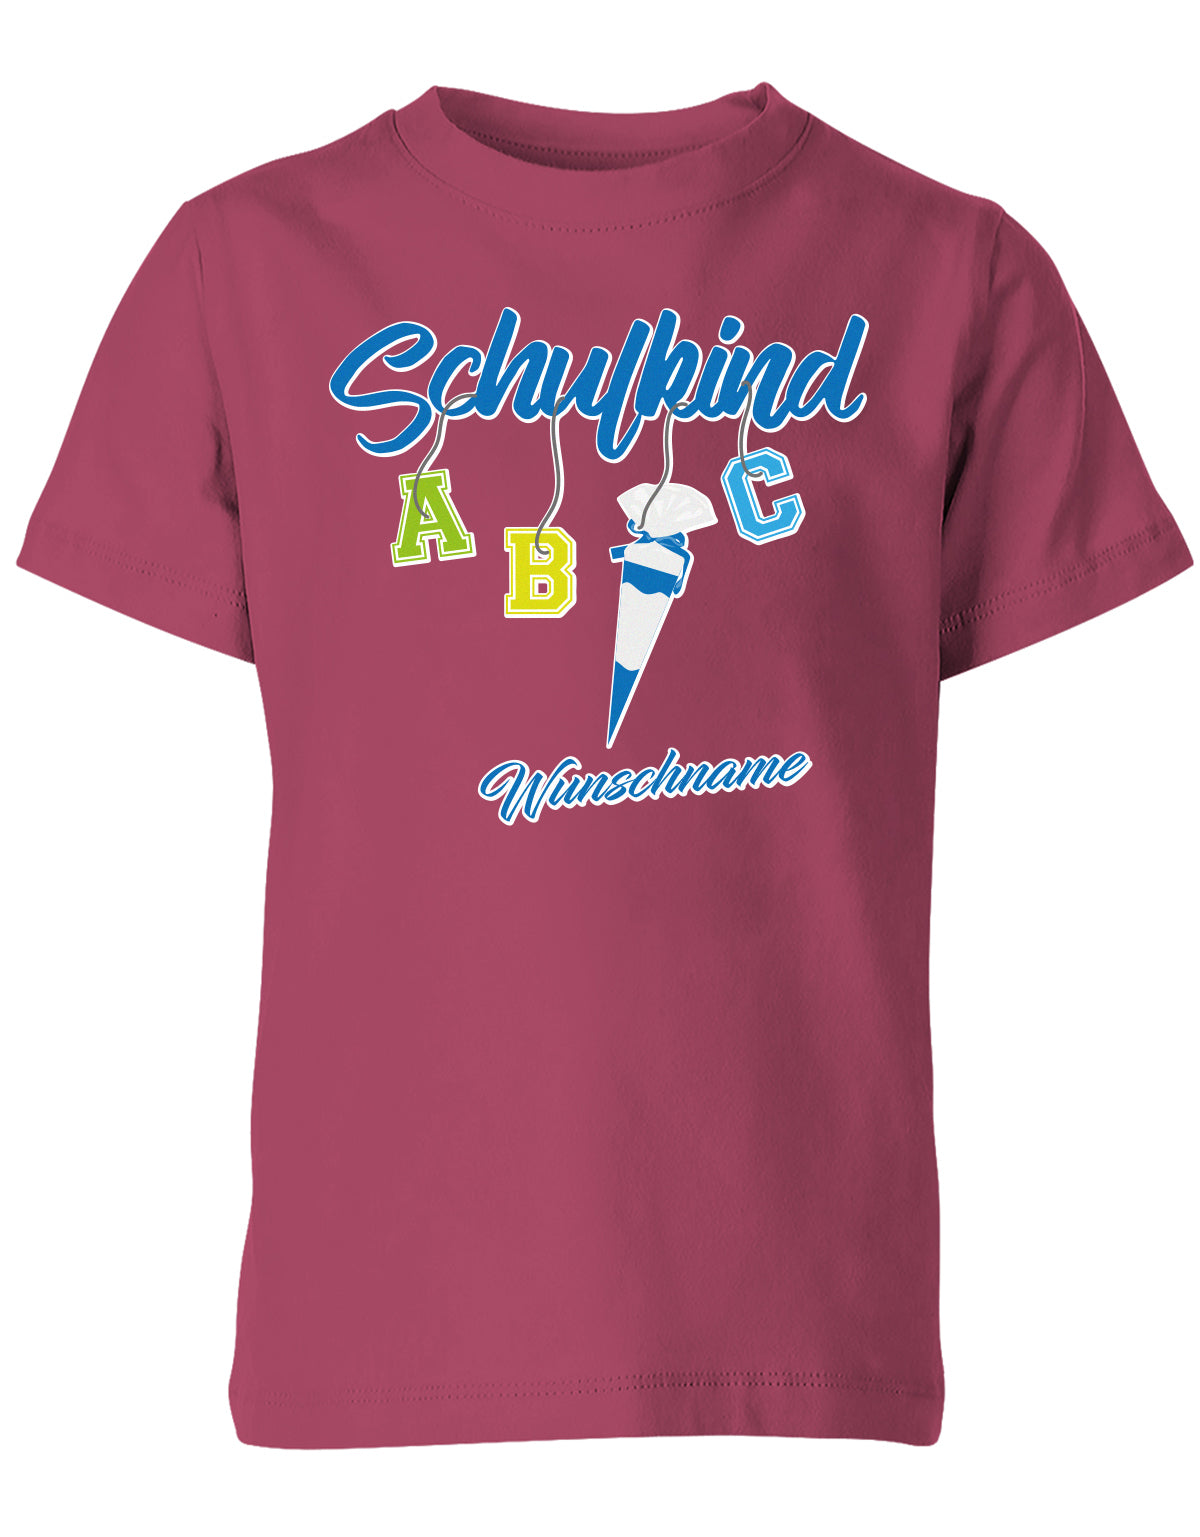 Schulkind ABC Schultüte Wunschname Blau oder Pink Einschulung Kinder T-Shirt Sorbet Blau